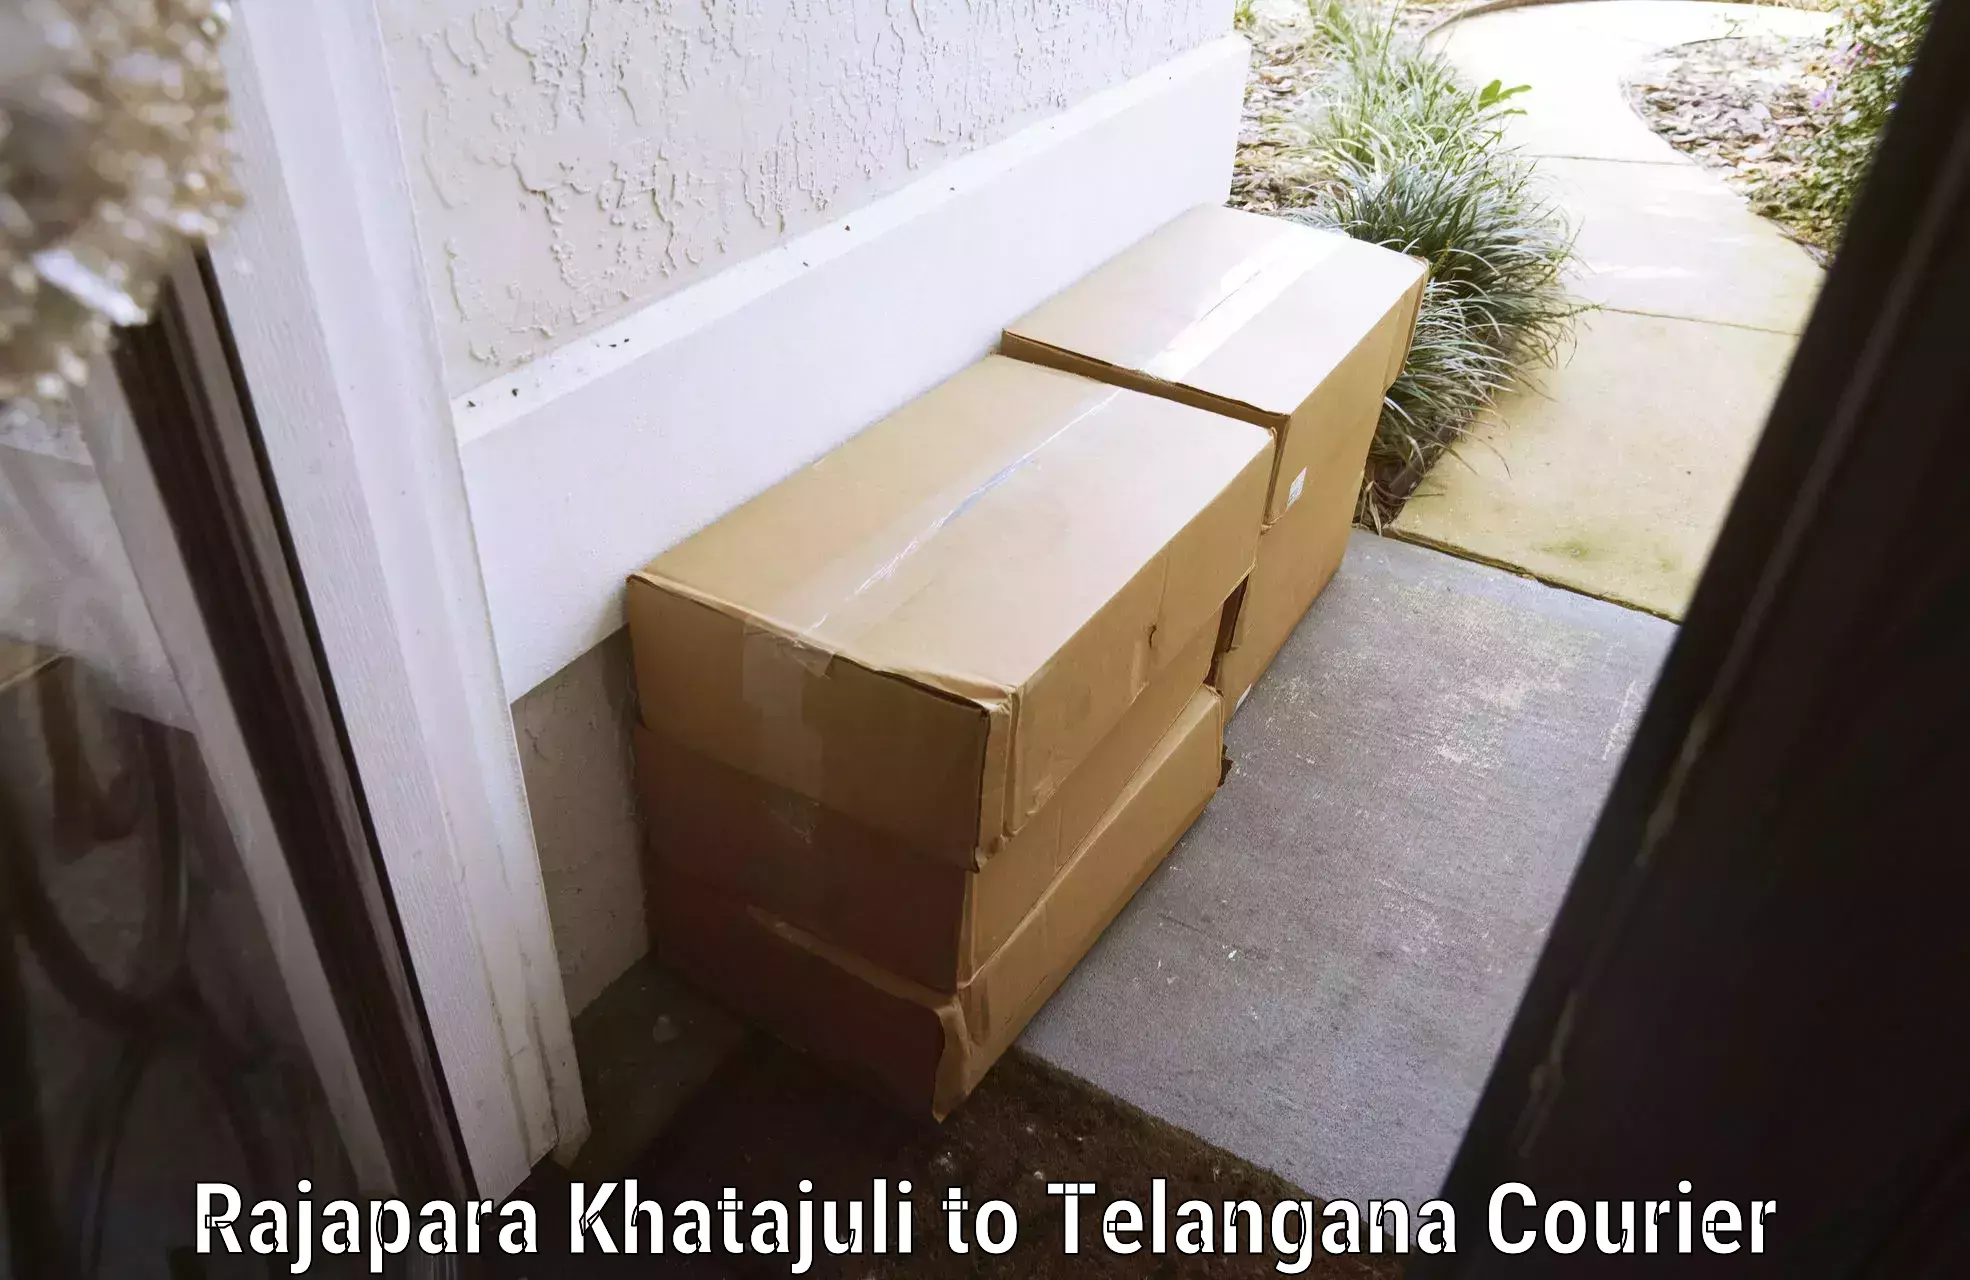 Urgent luggage shipment Rajapara Khatajuli to Rayaparthi